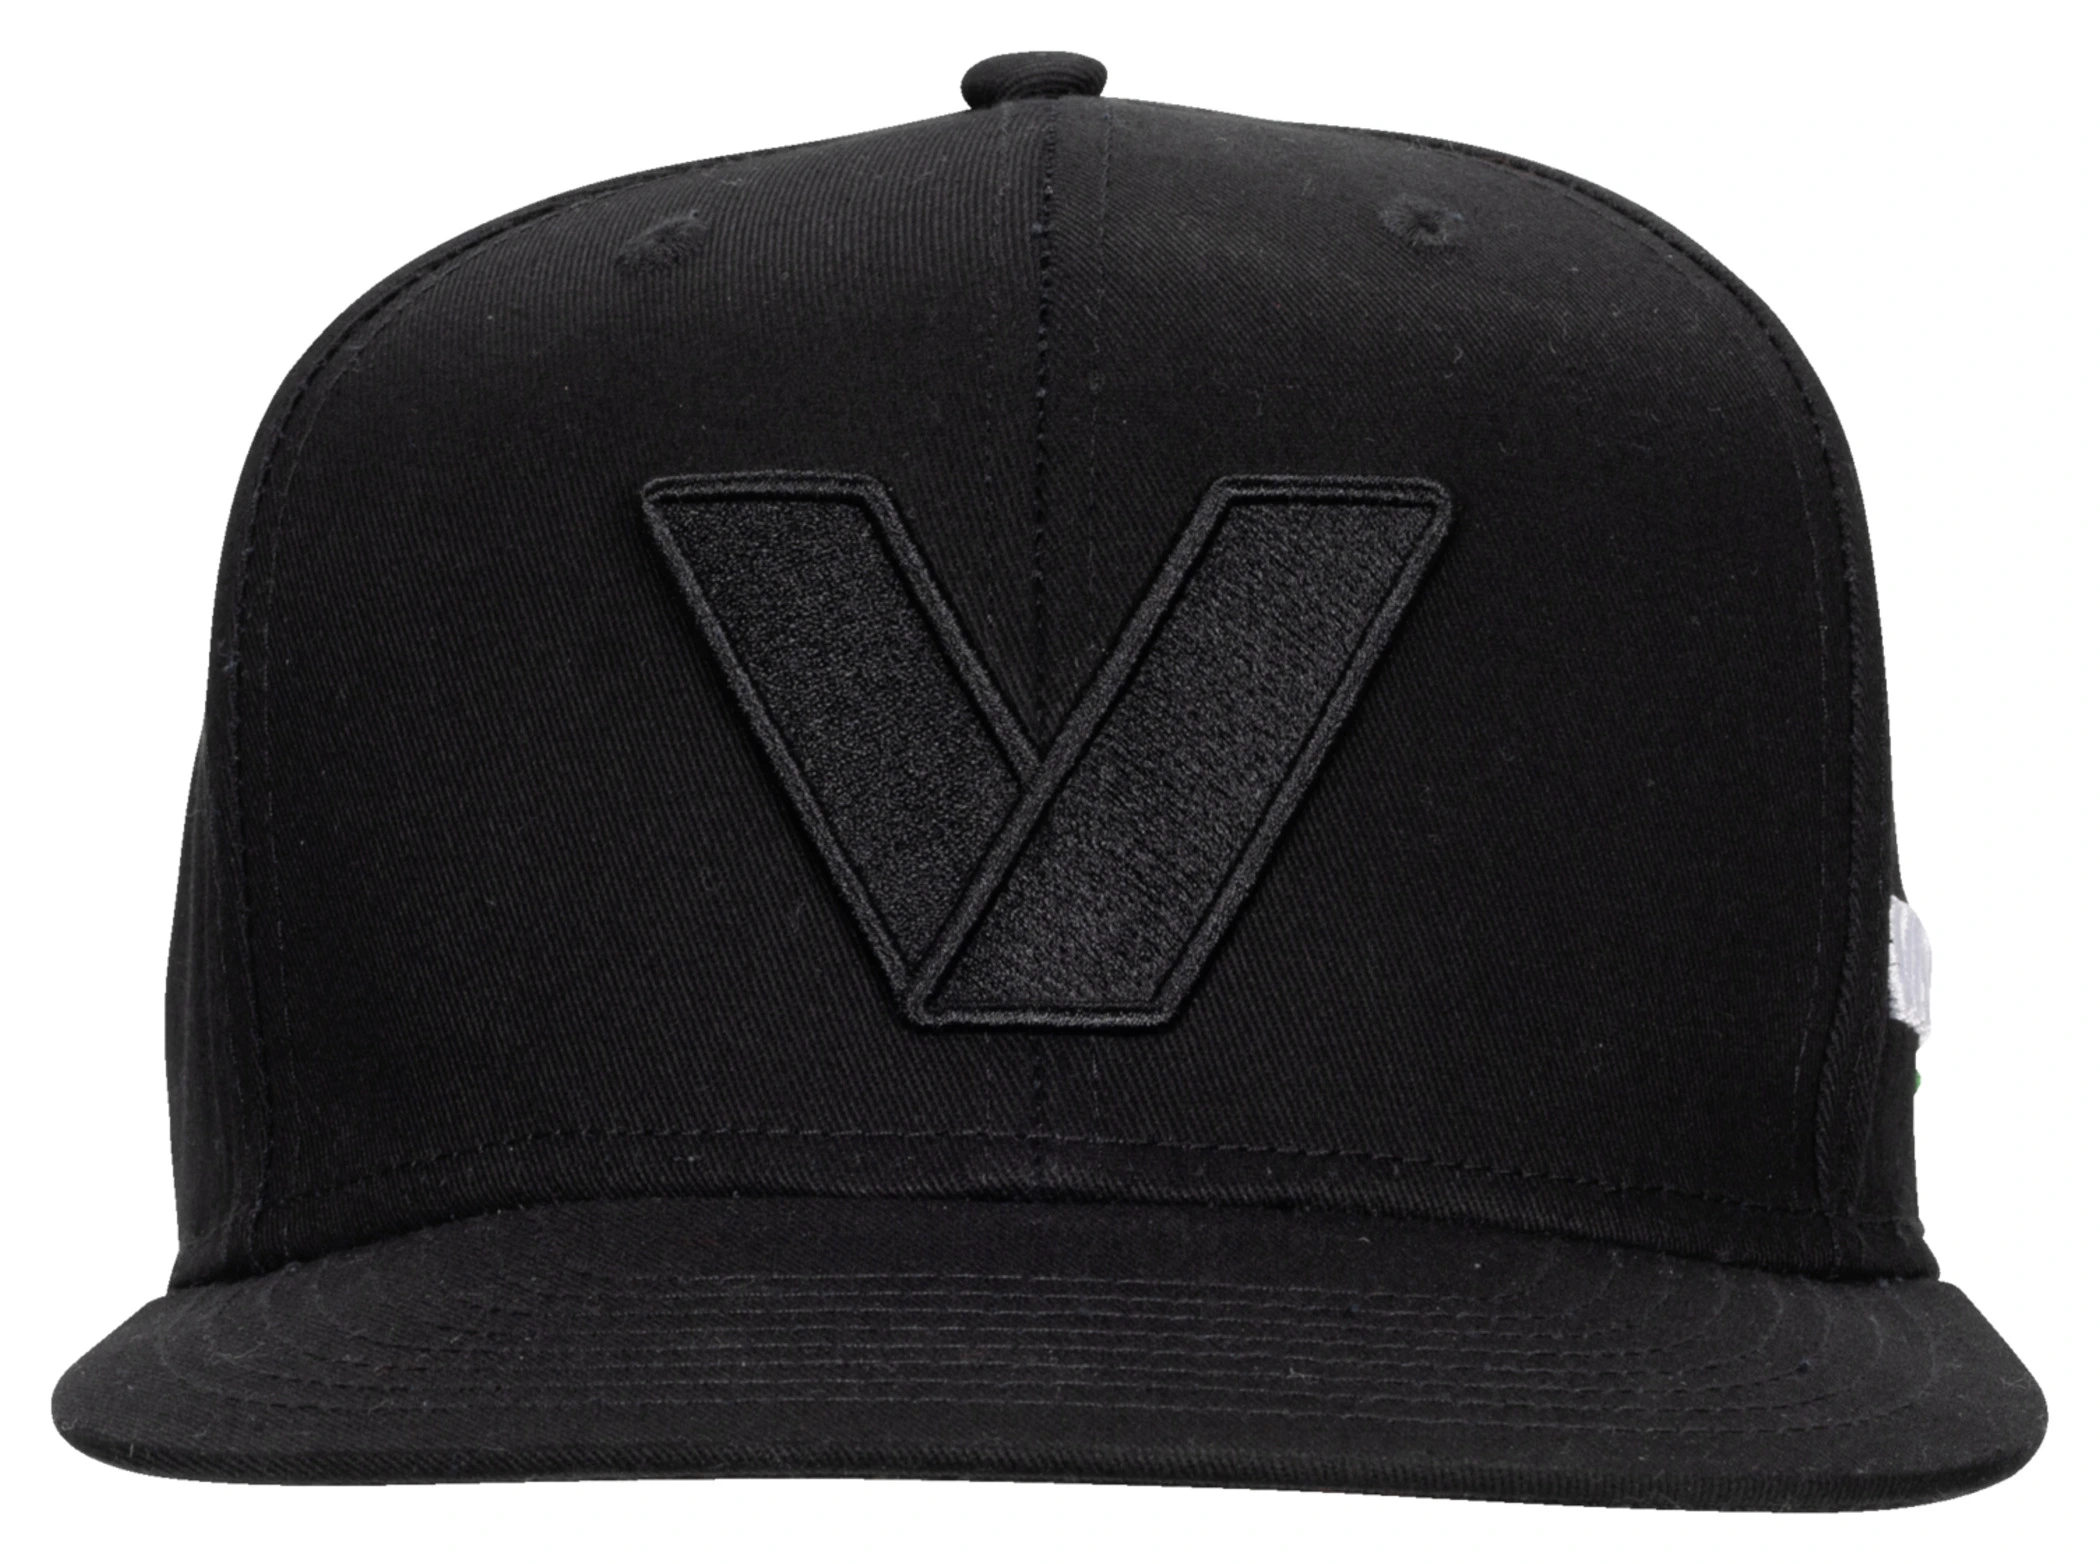 VANUCCI VXM-4 CAP NERO